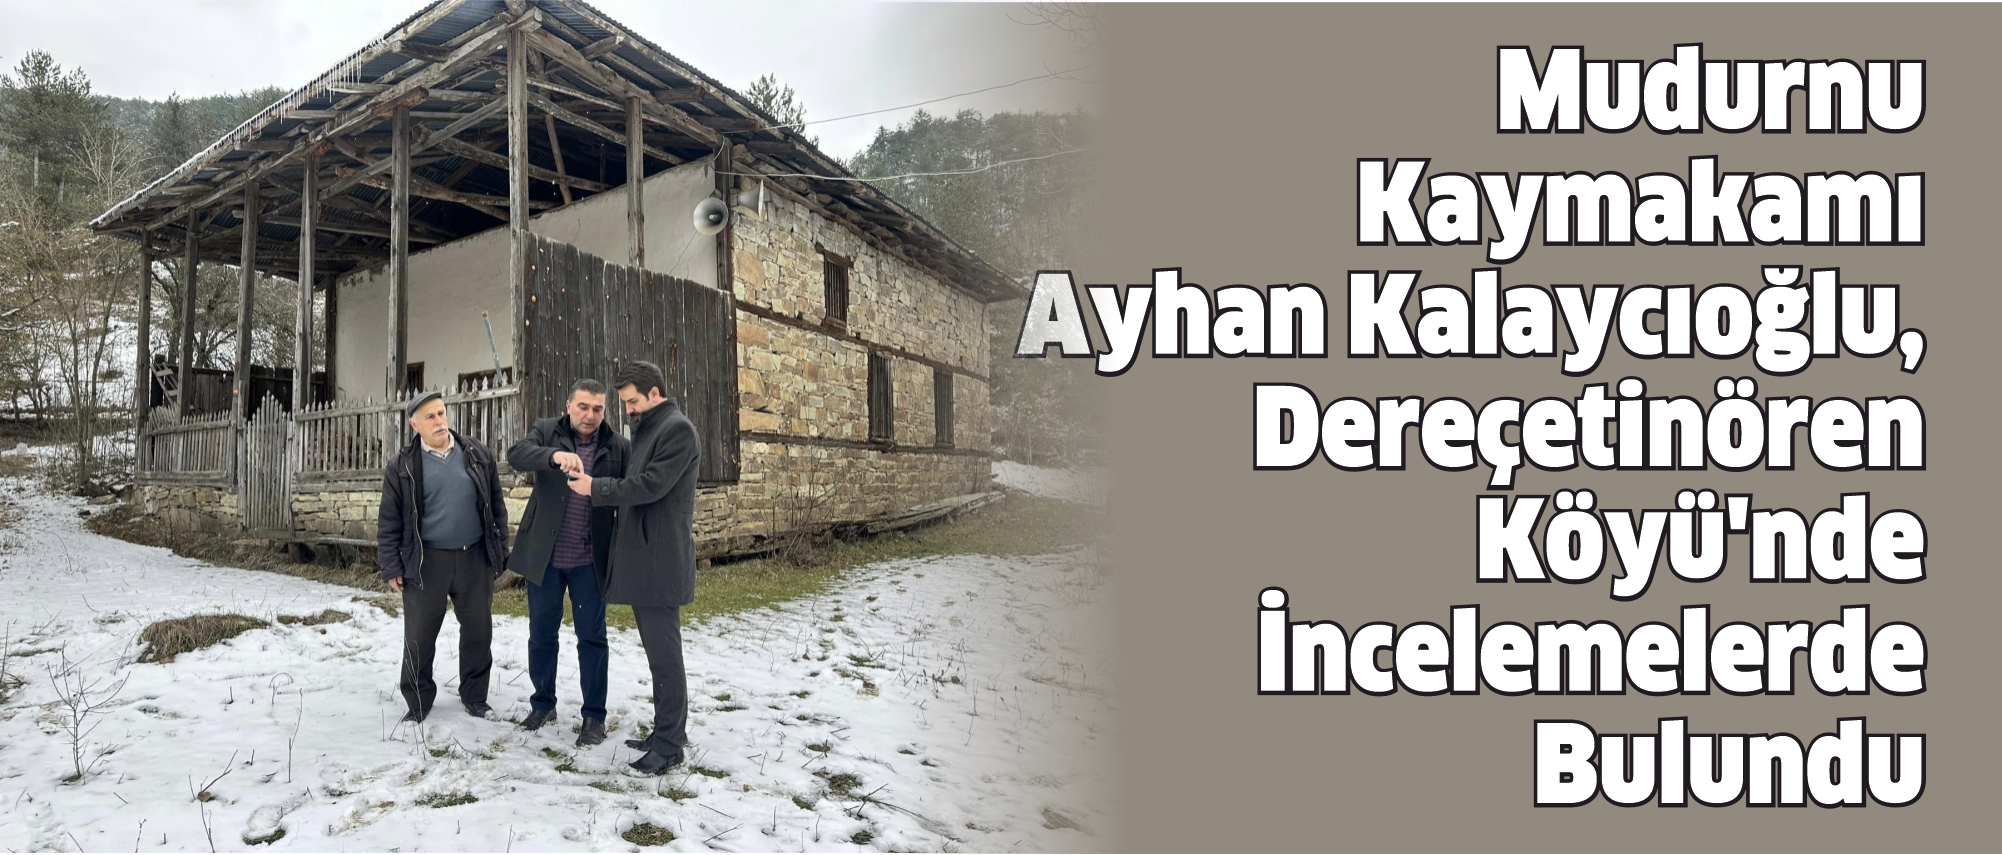 Mudurnu Kaymakamı Ayhan Kalaycioğlu, Dereçetinören Köyü'nde İncelemelerde Bulundu